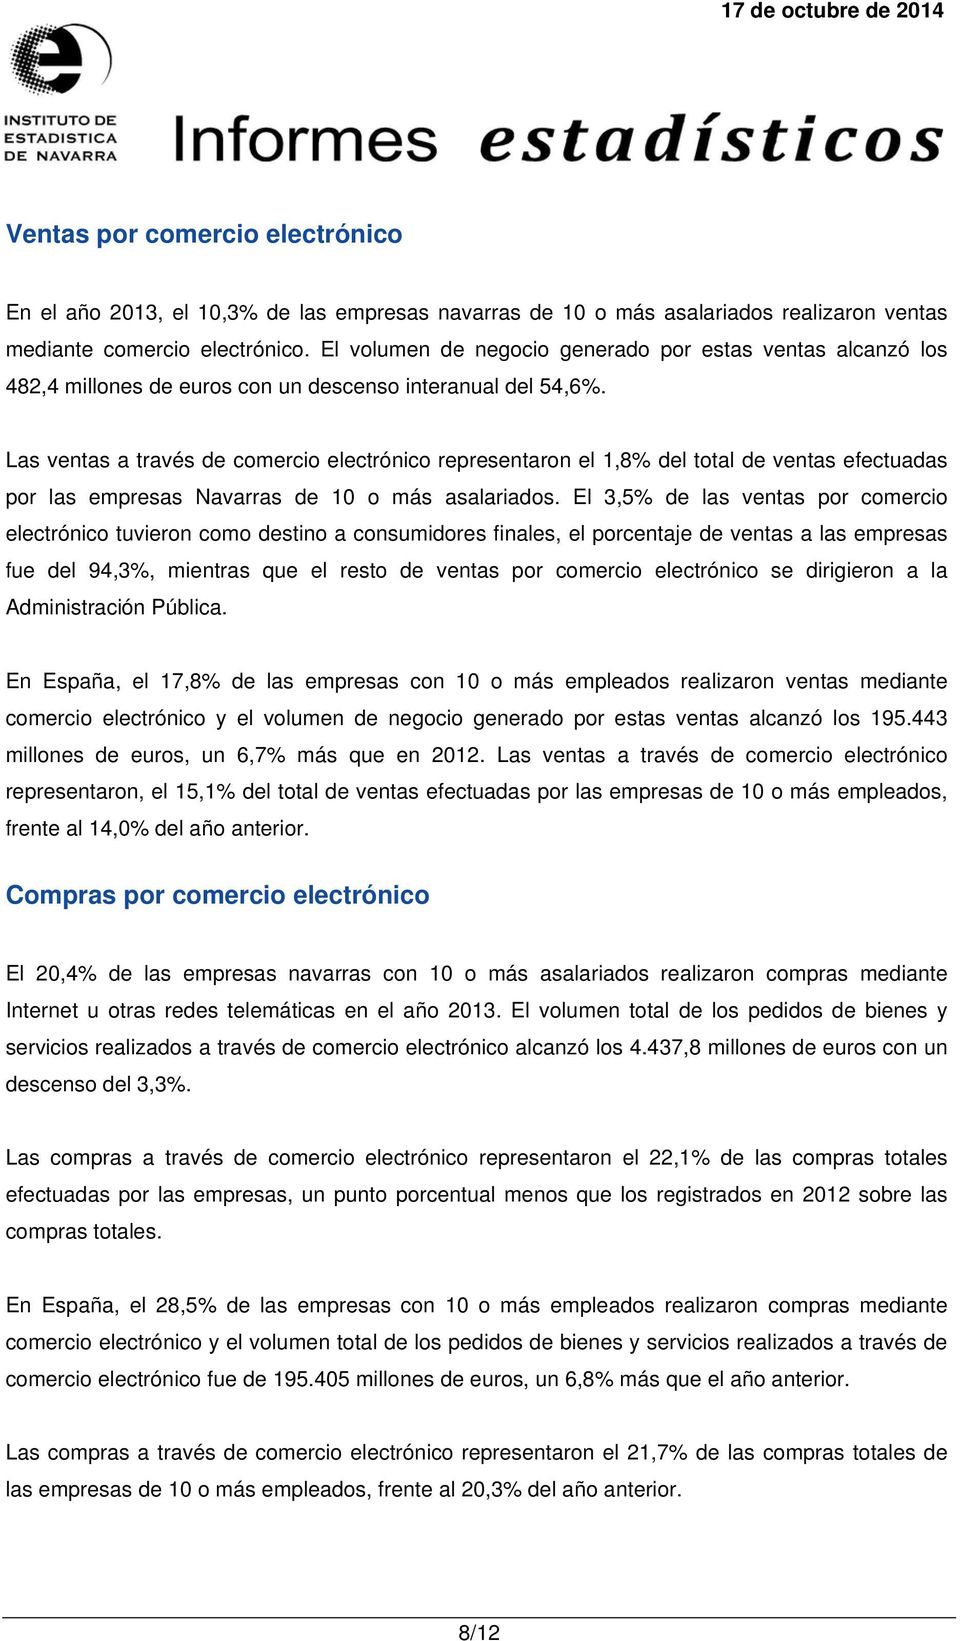 Las ventas a través de comercio electrónico representaron el 1,8% del total de ventas efectuadas por las empresas Navarras de 10 o más.